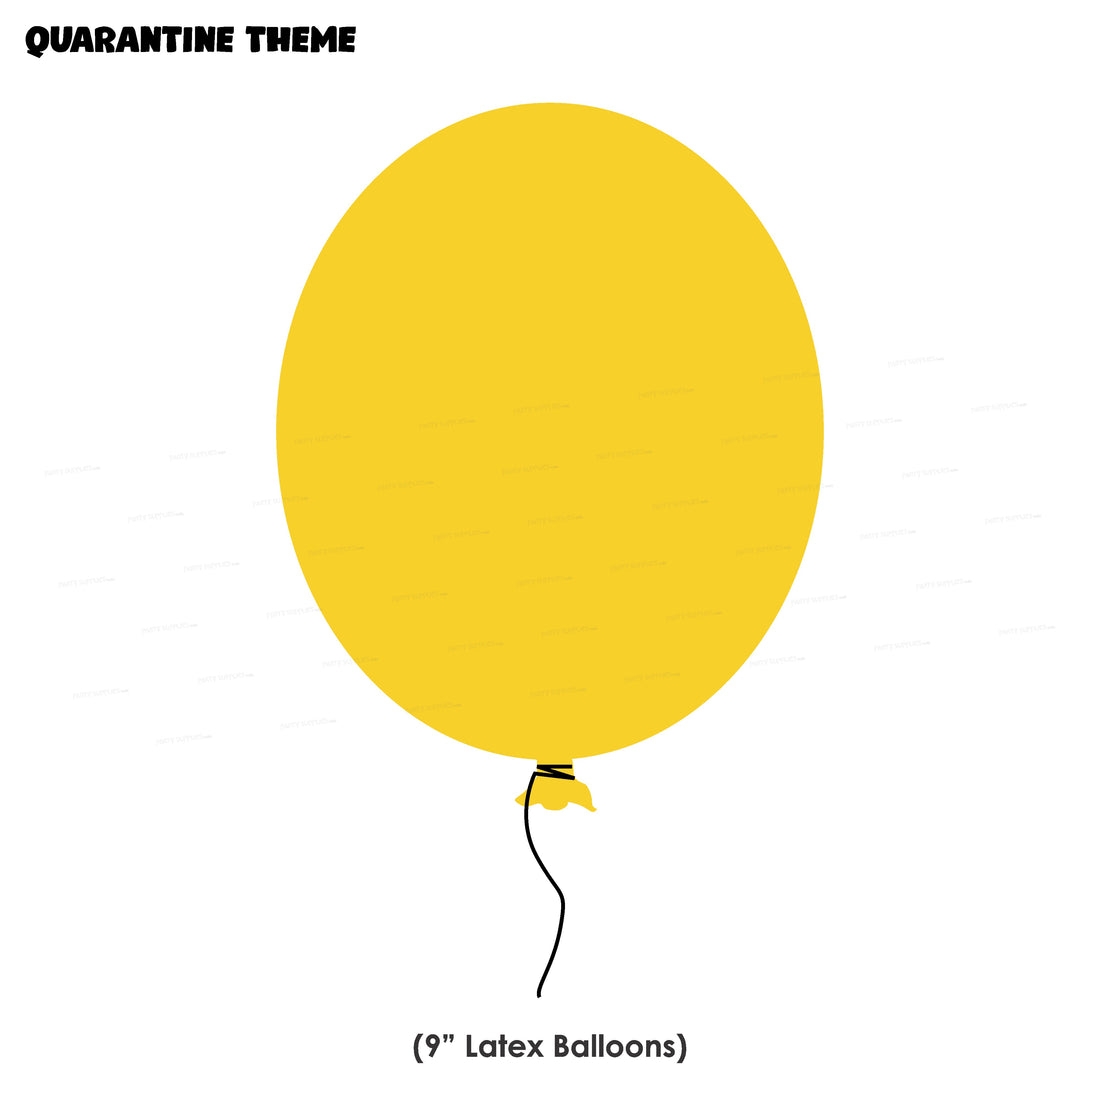 PSI Quarantine Theme Colour 30 Pcs Balloons